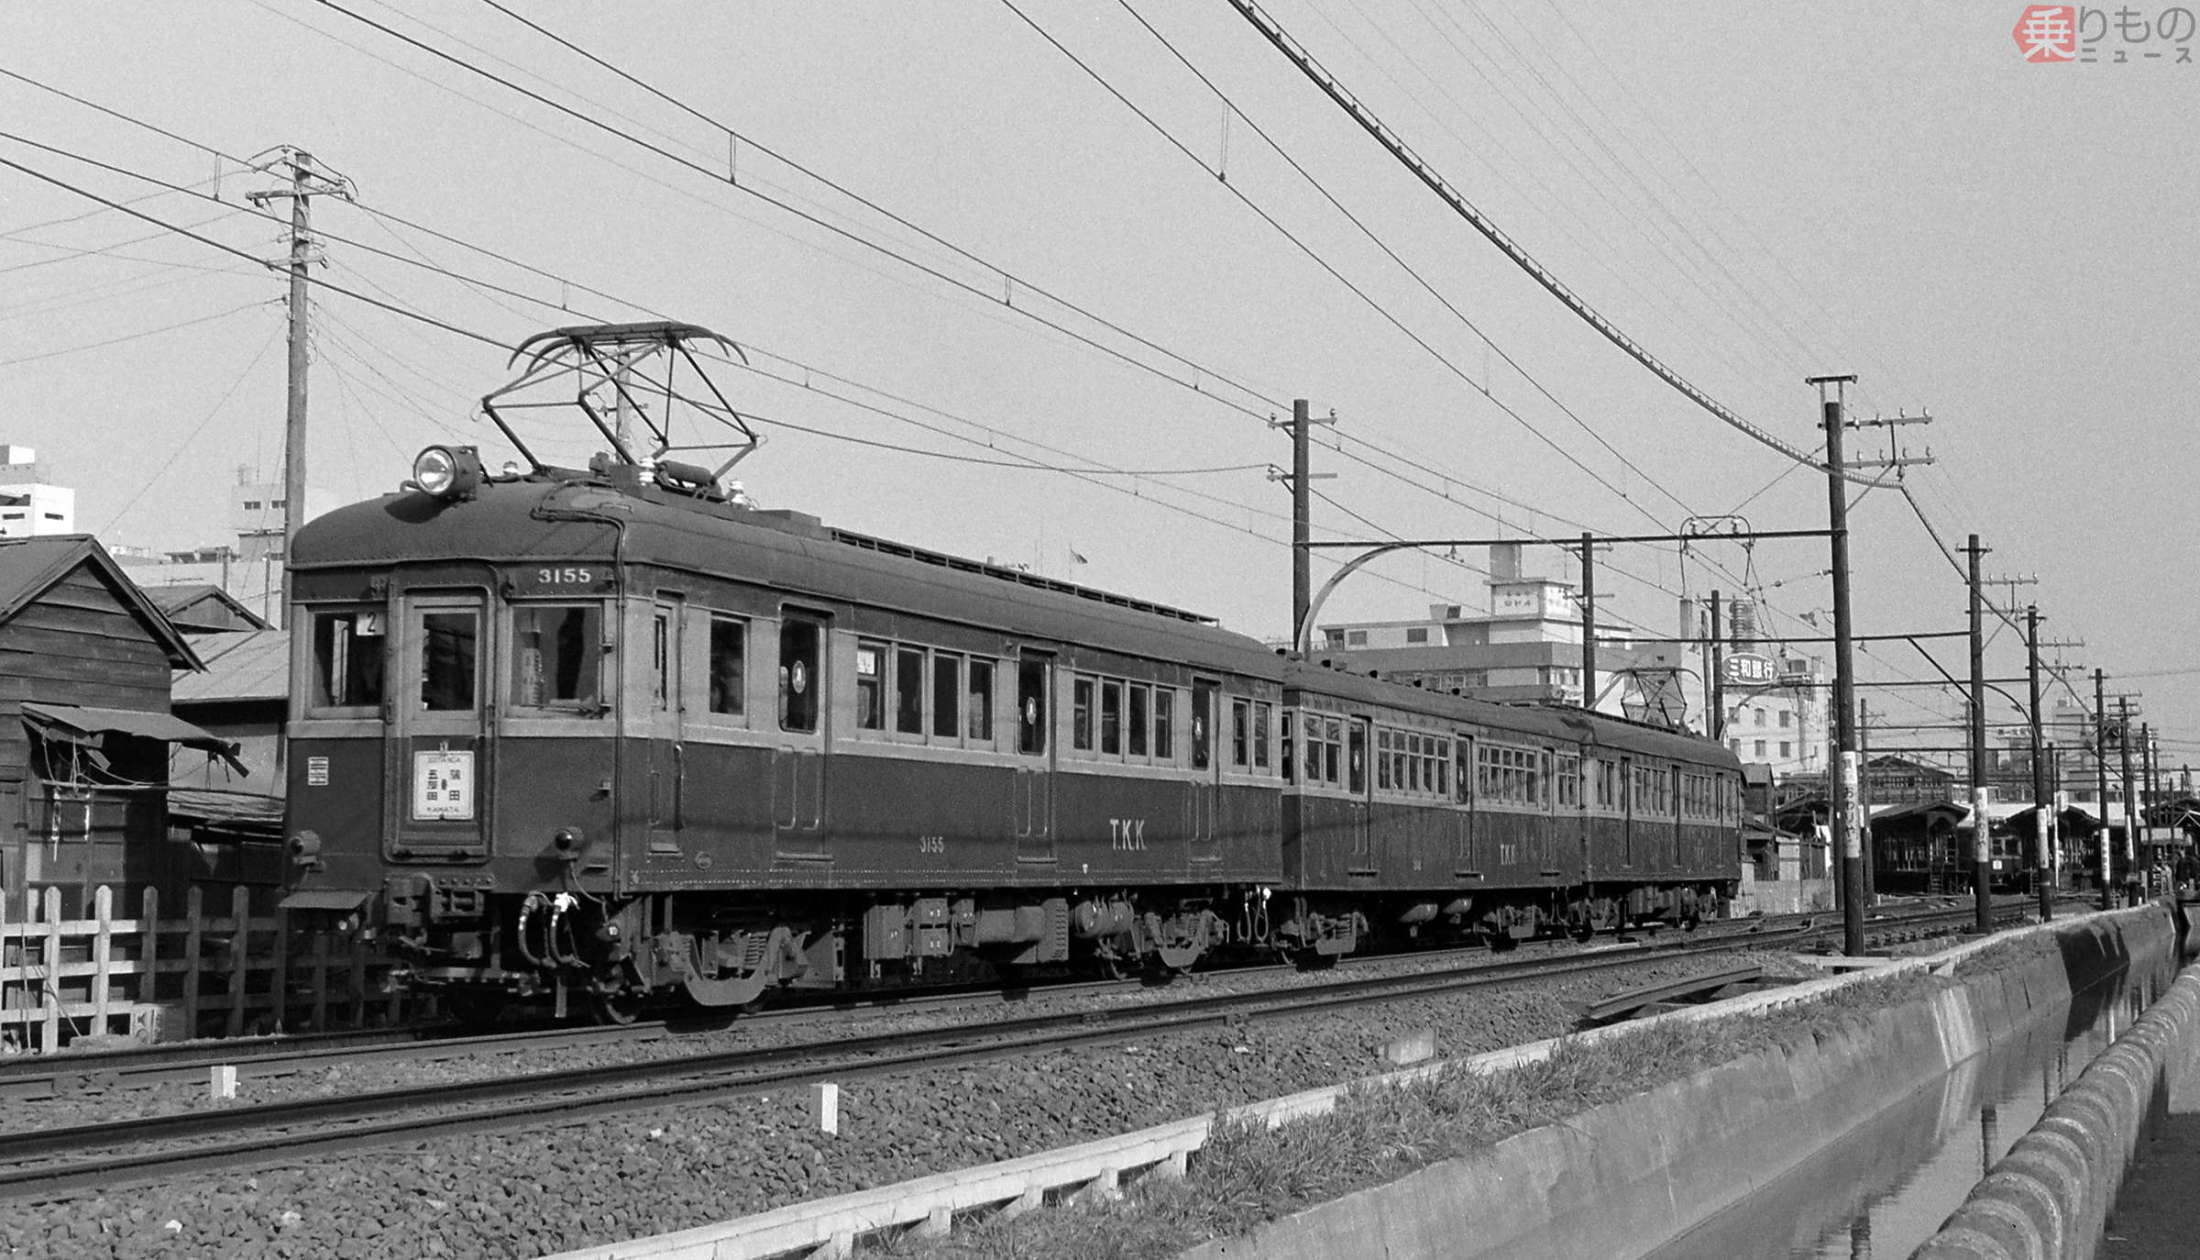 【懐かしの私鉄写真】形態は多種多様 昭和41年に撮影した東急電鉄の旧型車両たち